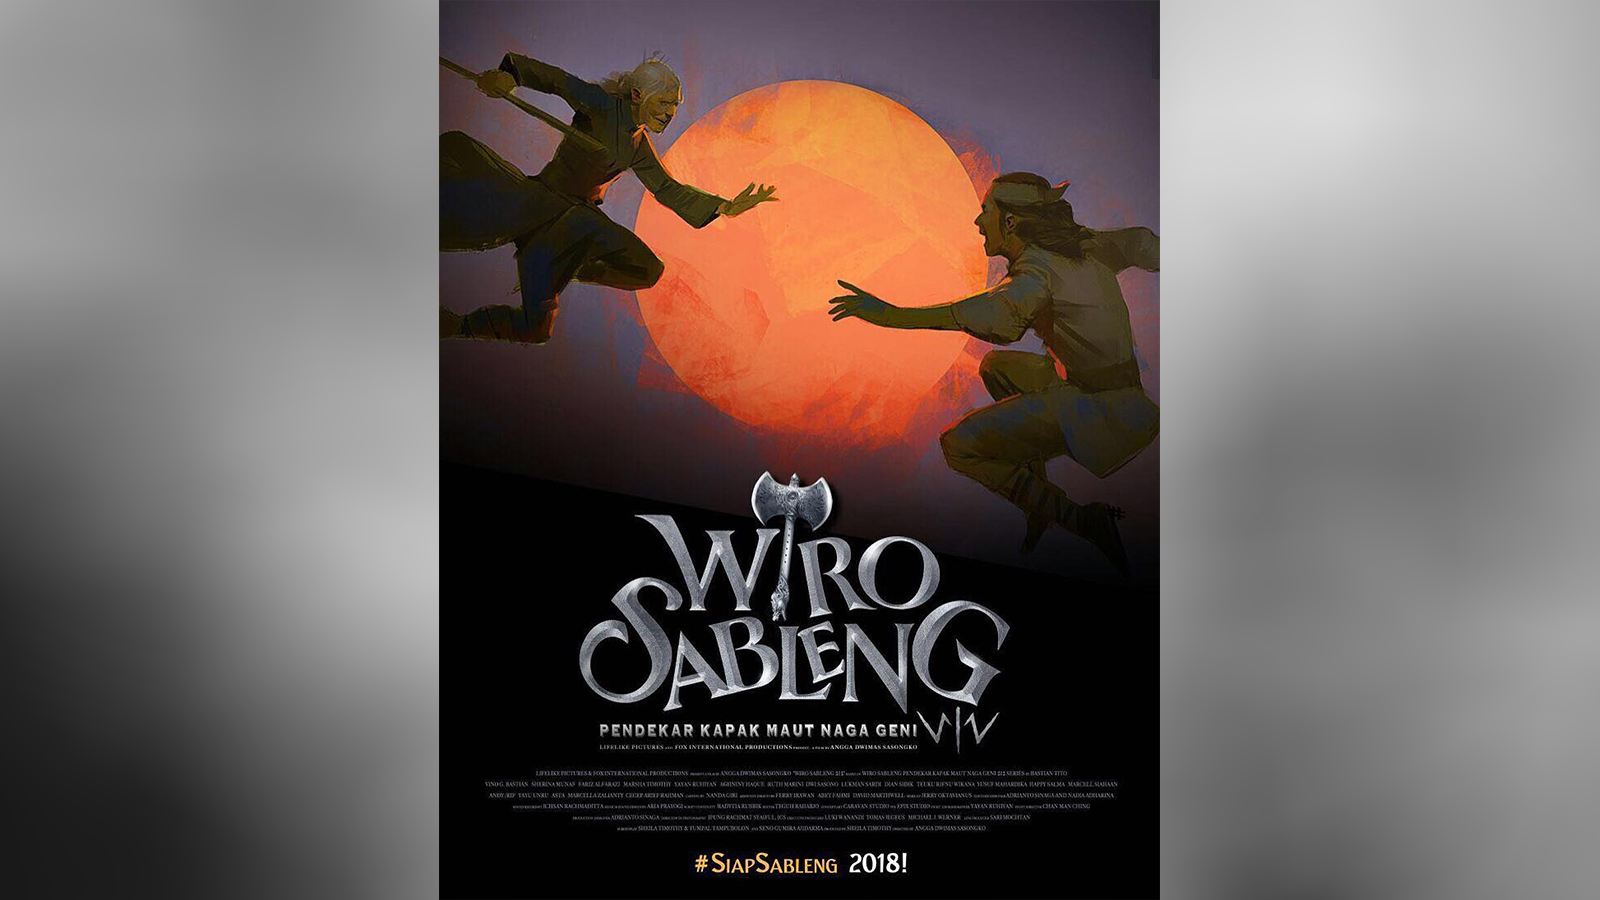 Syuting Outdoor Jadi Tantangan dalam Penggarapan Film Wiro Sableng